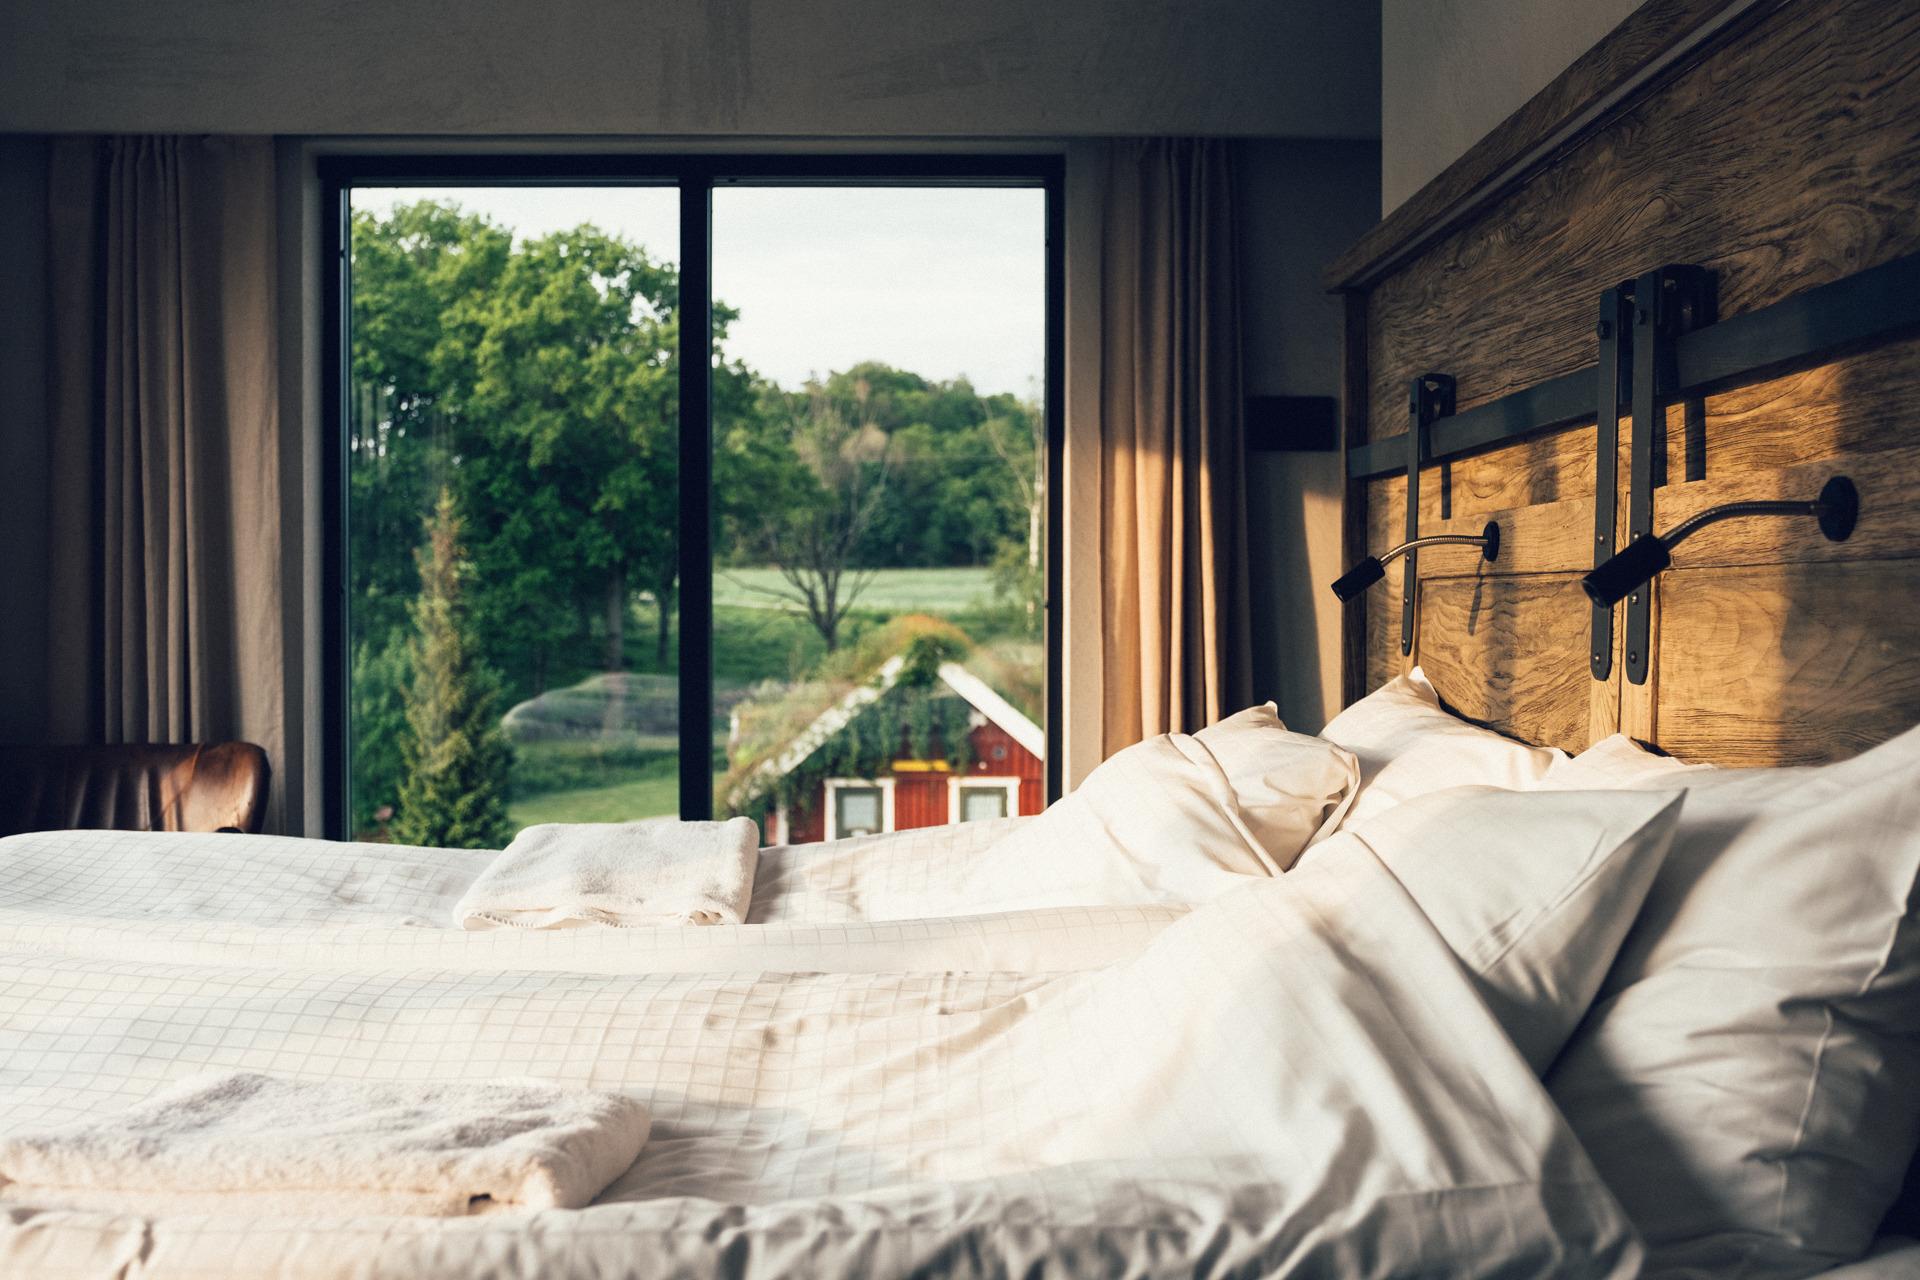 Un lit double dans une chambre d'hôtel dont les fenêtres donnent sur une cabane rouge et une forêt.